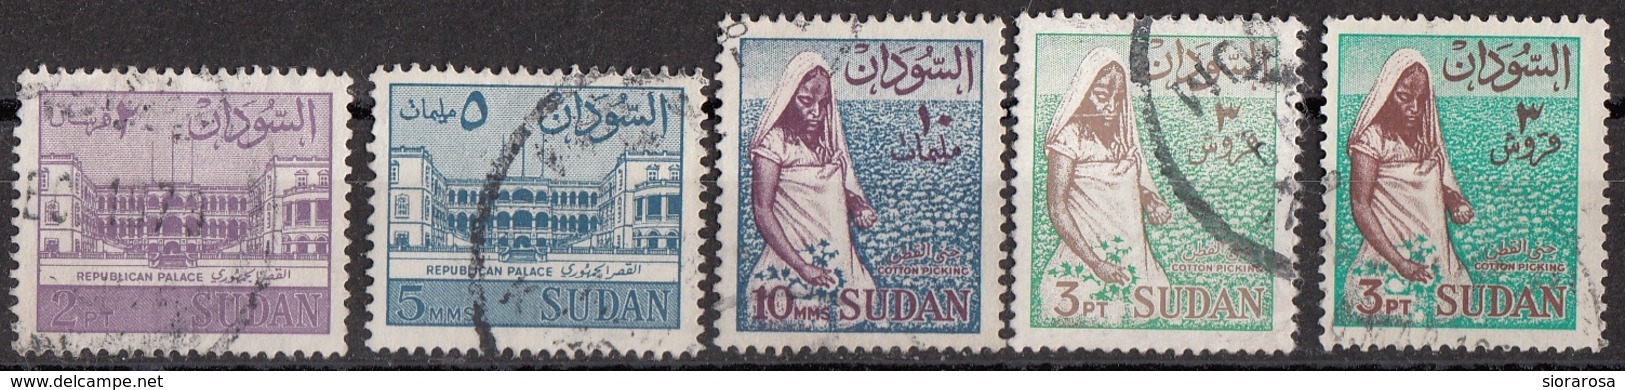 Sudan 1962  Palace Of The Republic, Khartoum - Cotton Picker  Viaggiato Used - Sudan (1954-...)